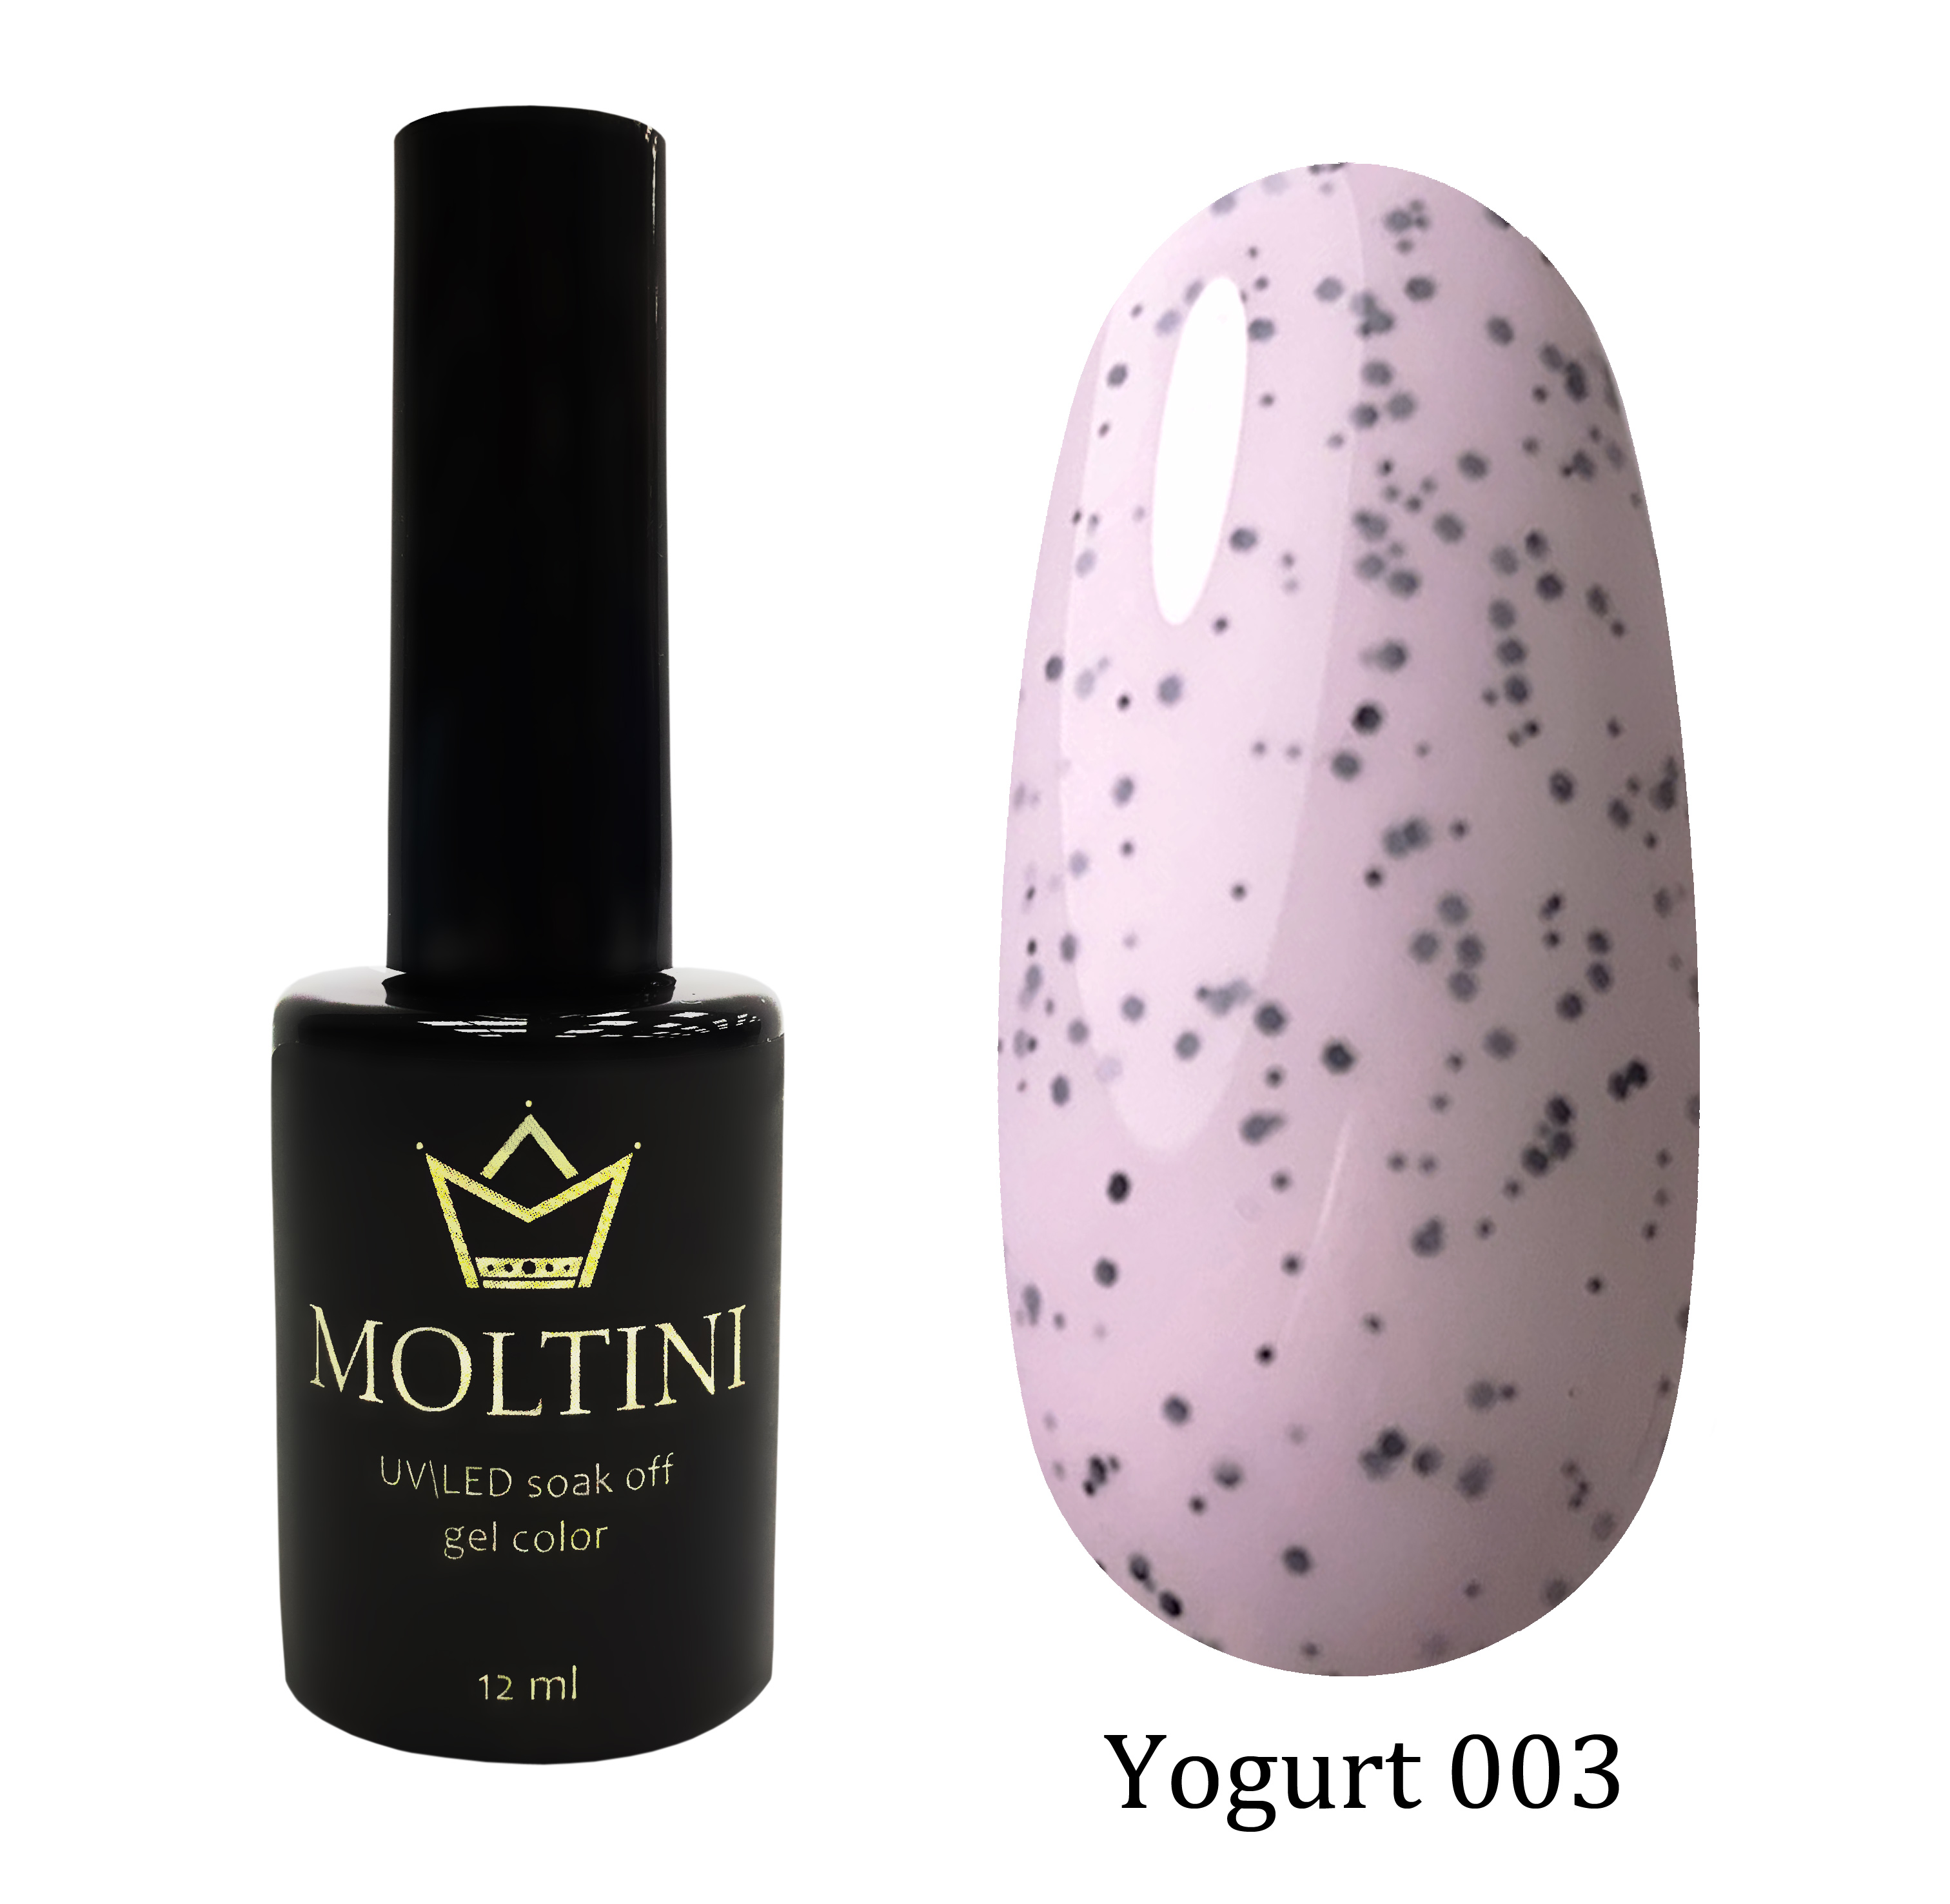 Moltini цветной гель-лак Yogurt 003, 12 мл